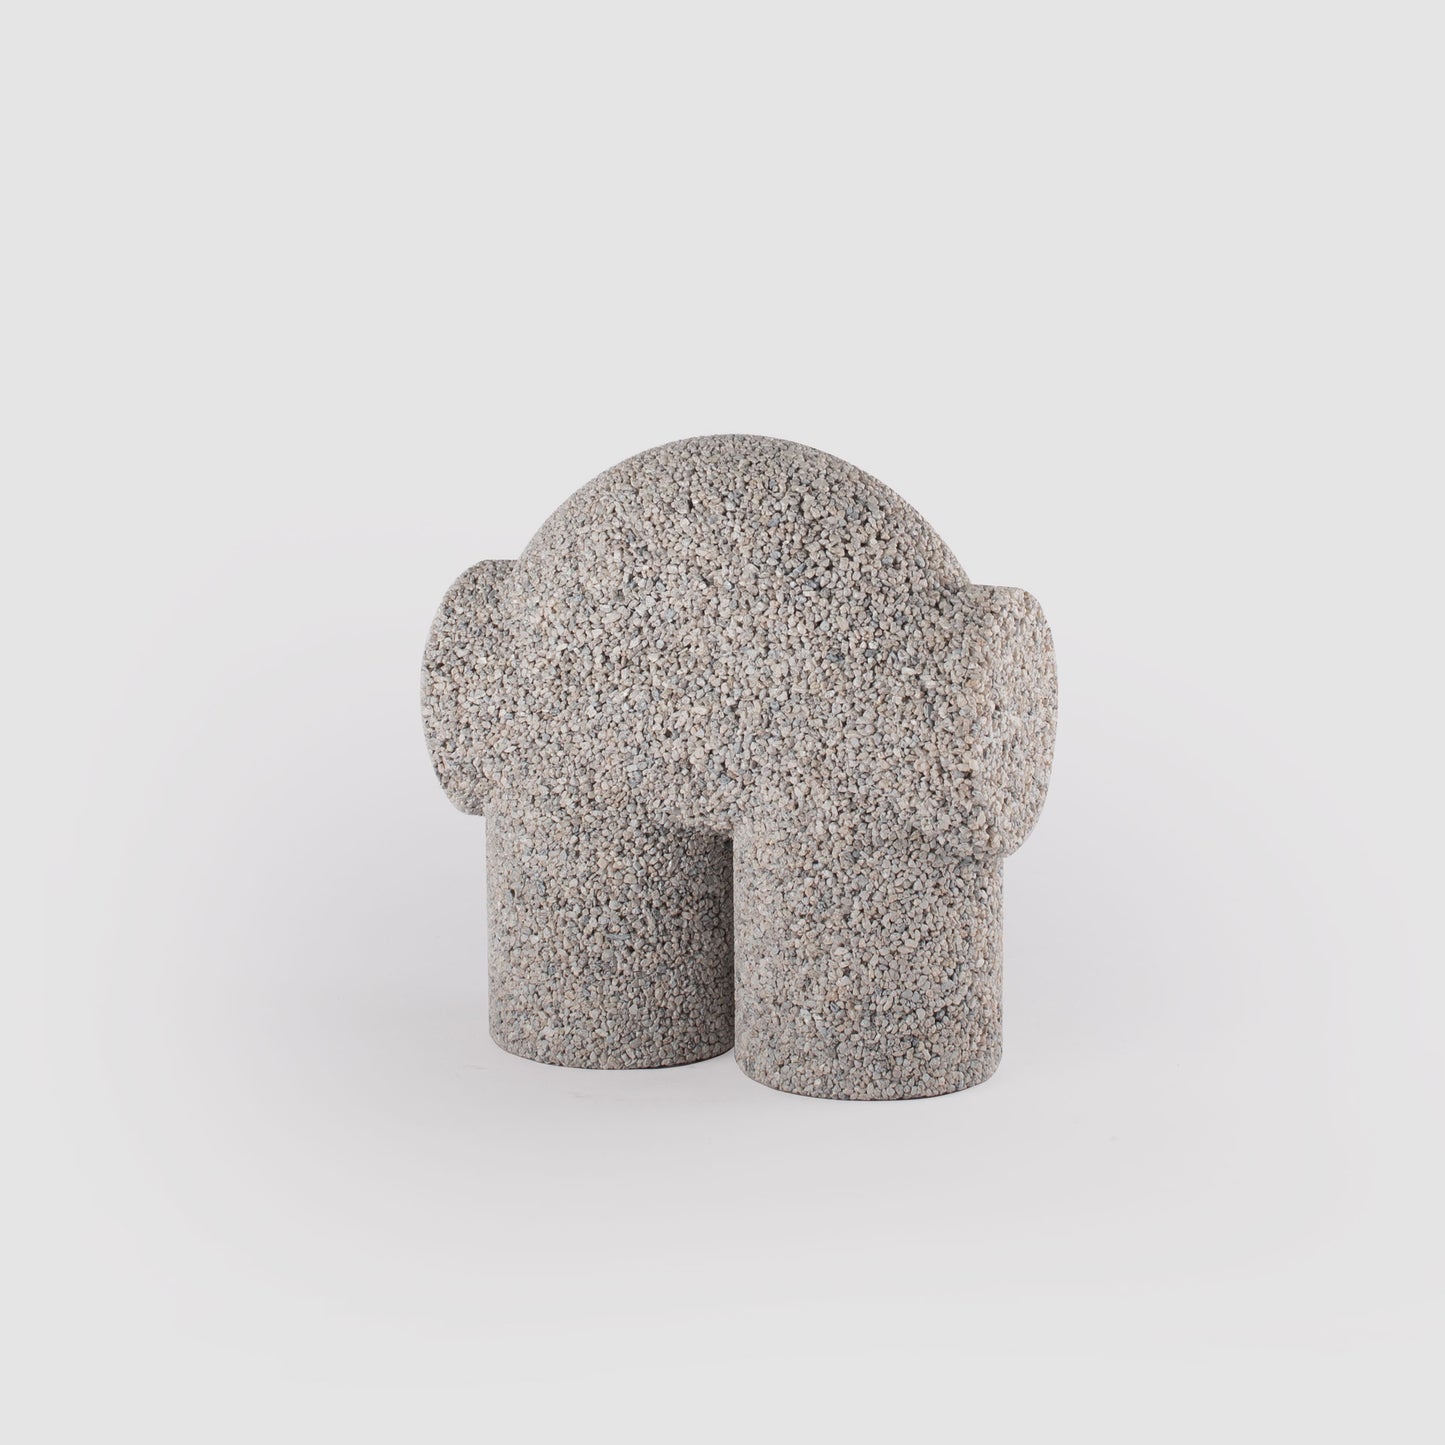 Two-legged gravel object WHITE